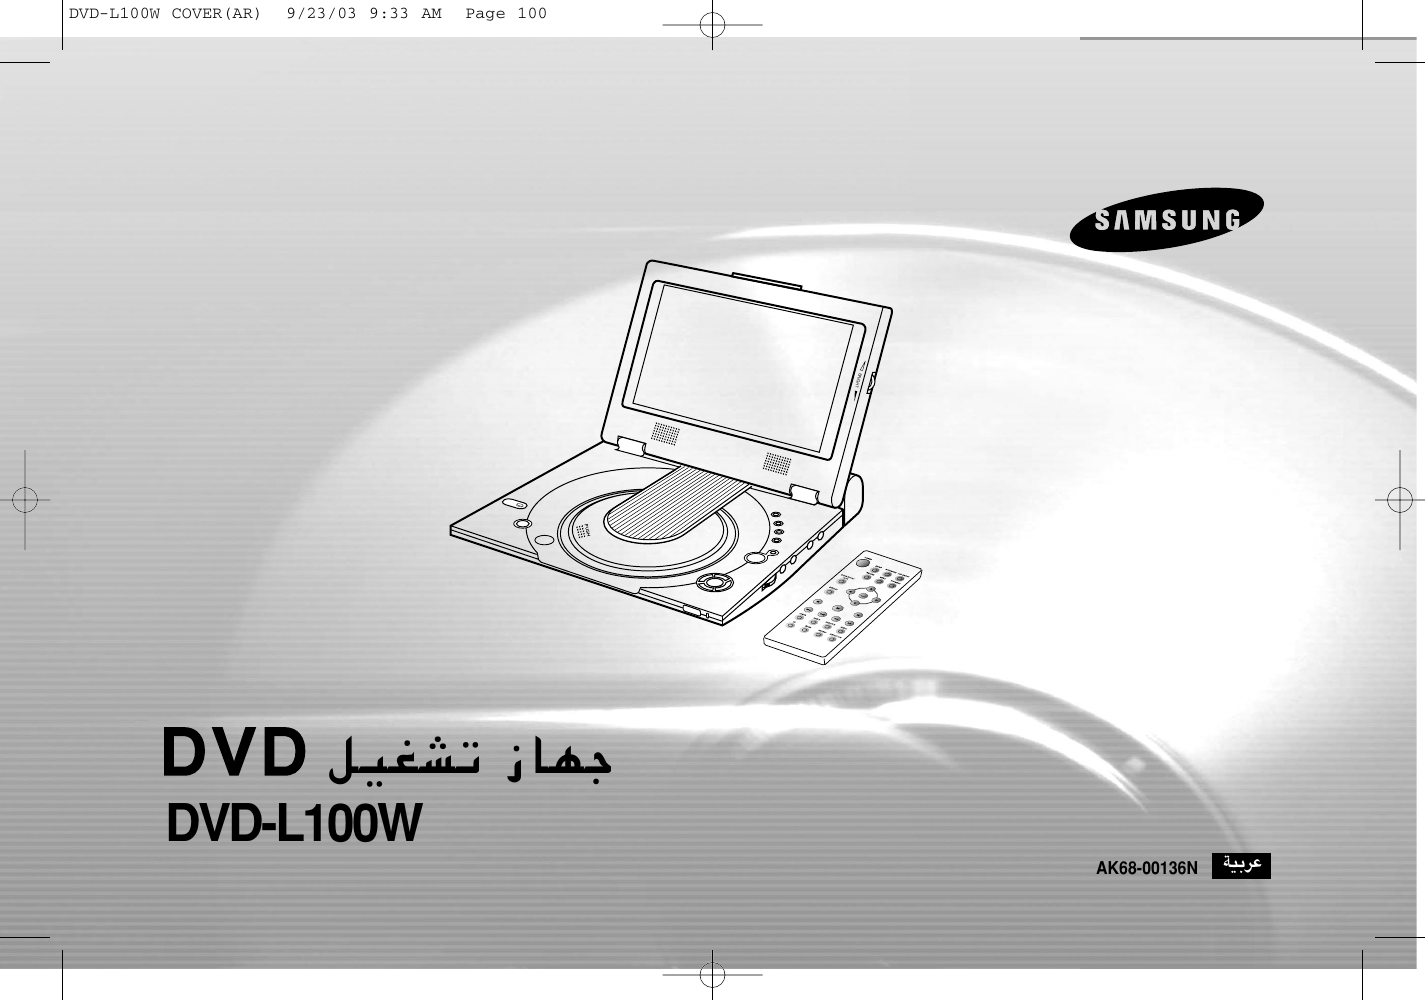 Samsung Dvd L100w Ar 00136n L100w 20030929101044250 00136n L100war